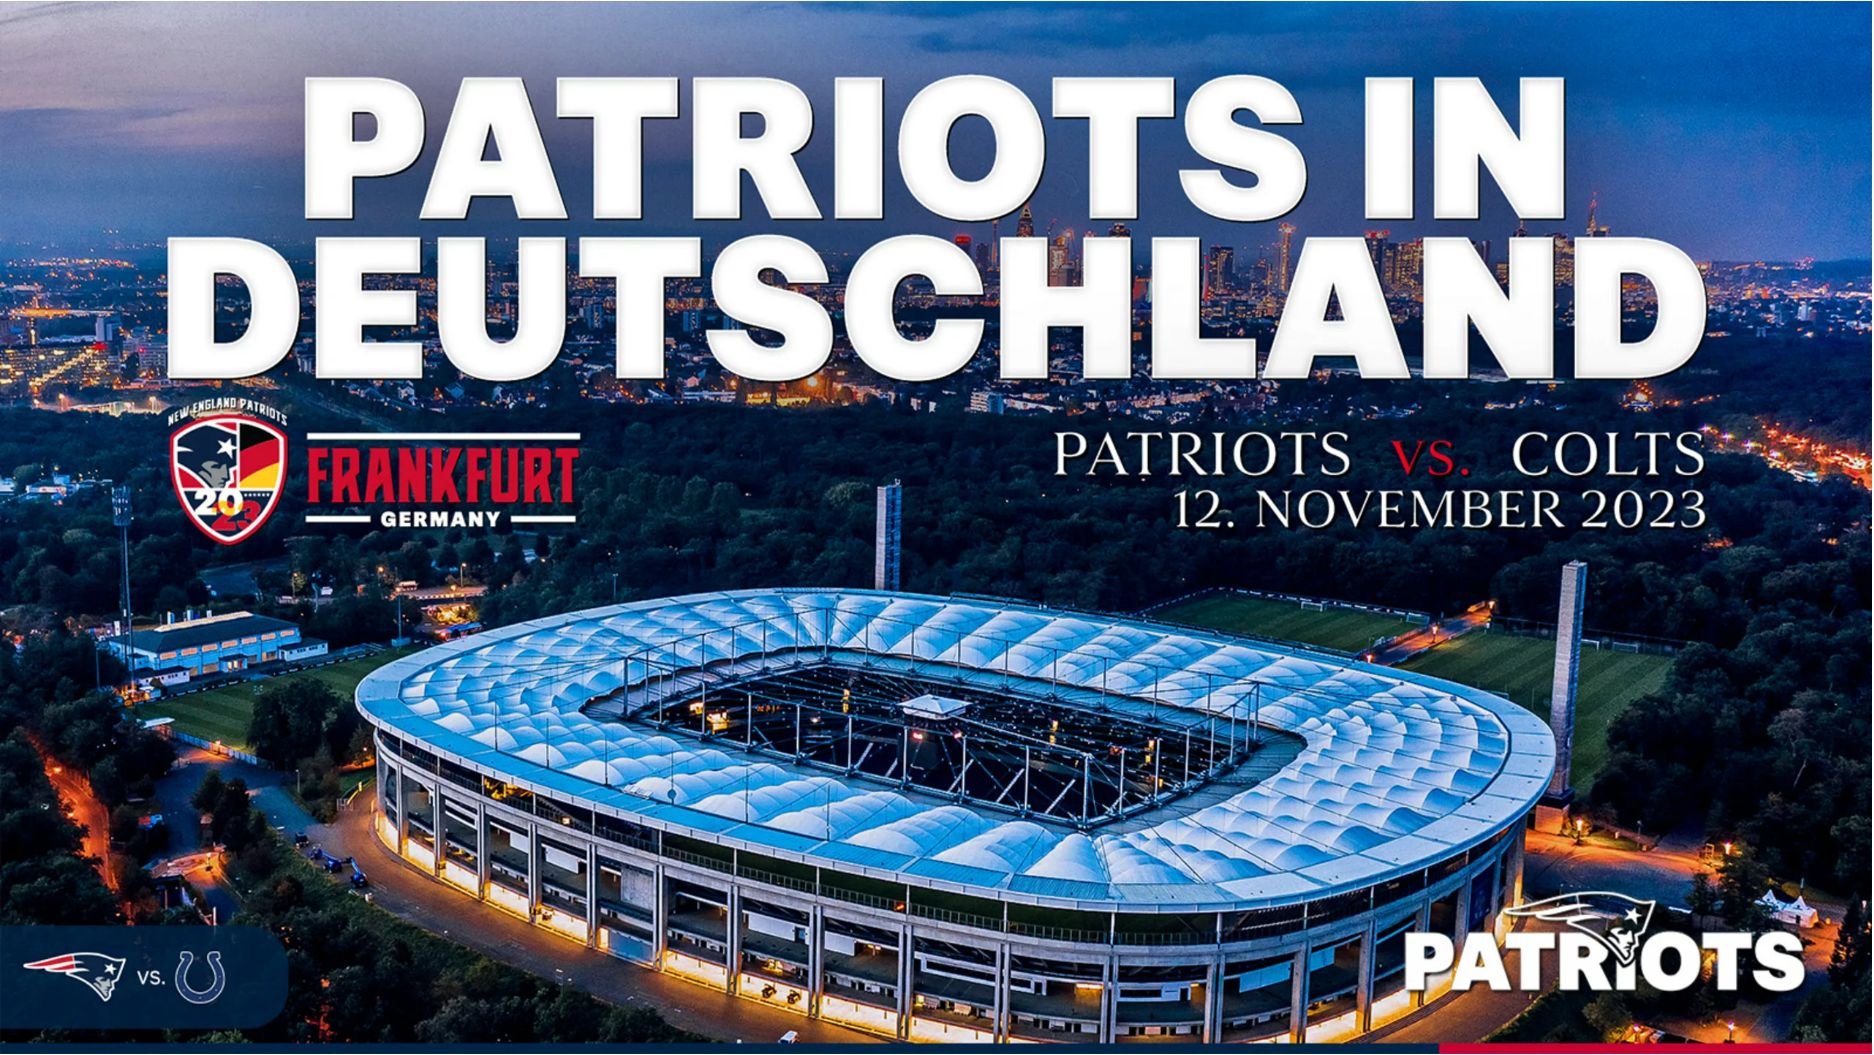 Das planen die New England Patriots in Frankfurt